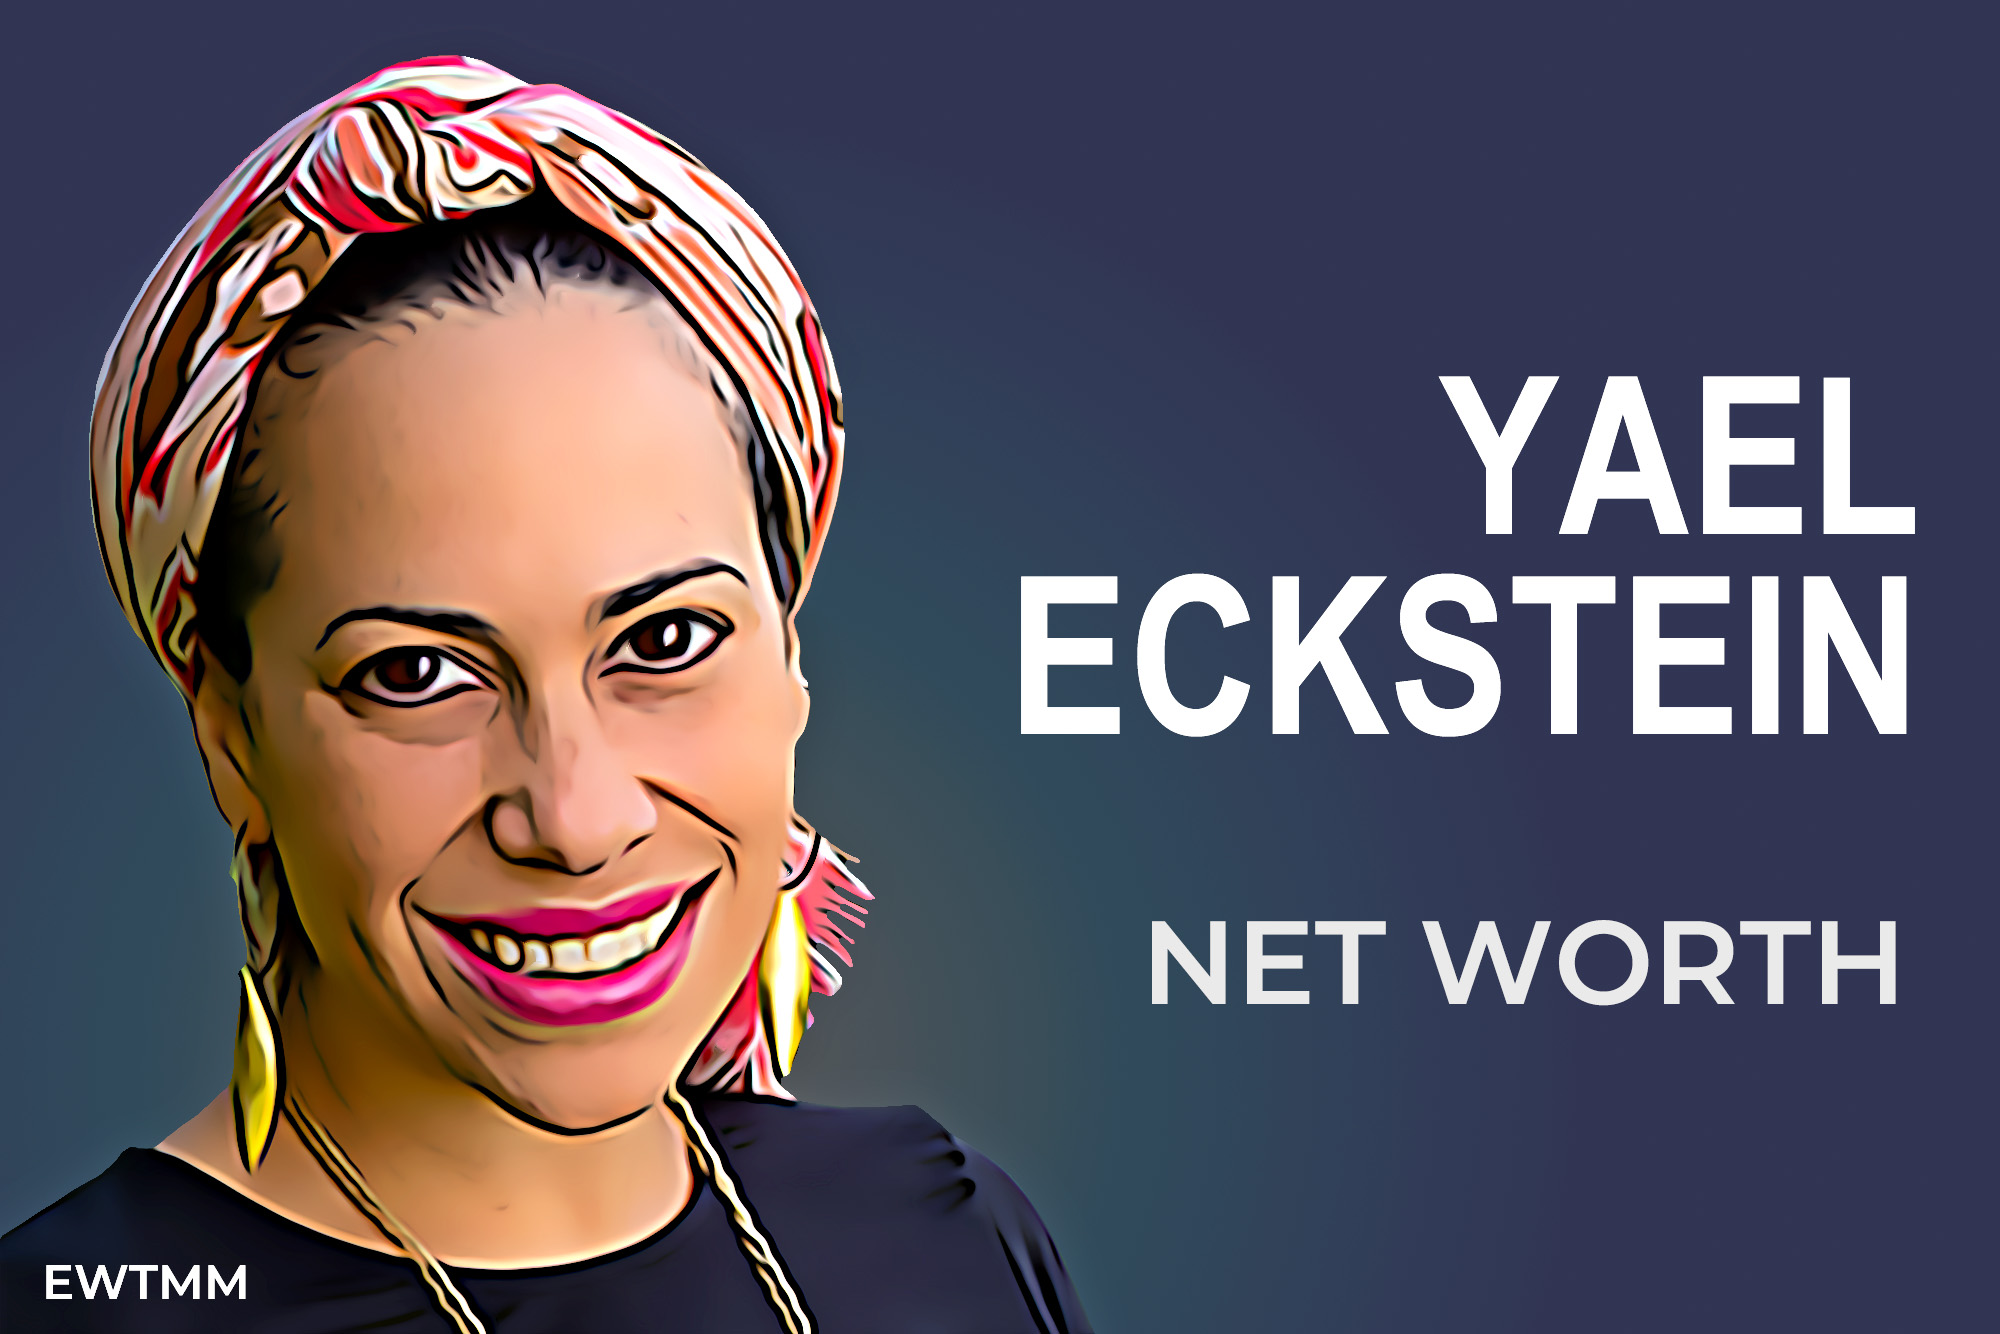 Yael Eckstein Net Worth